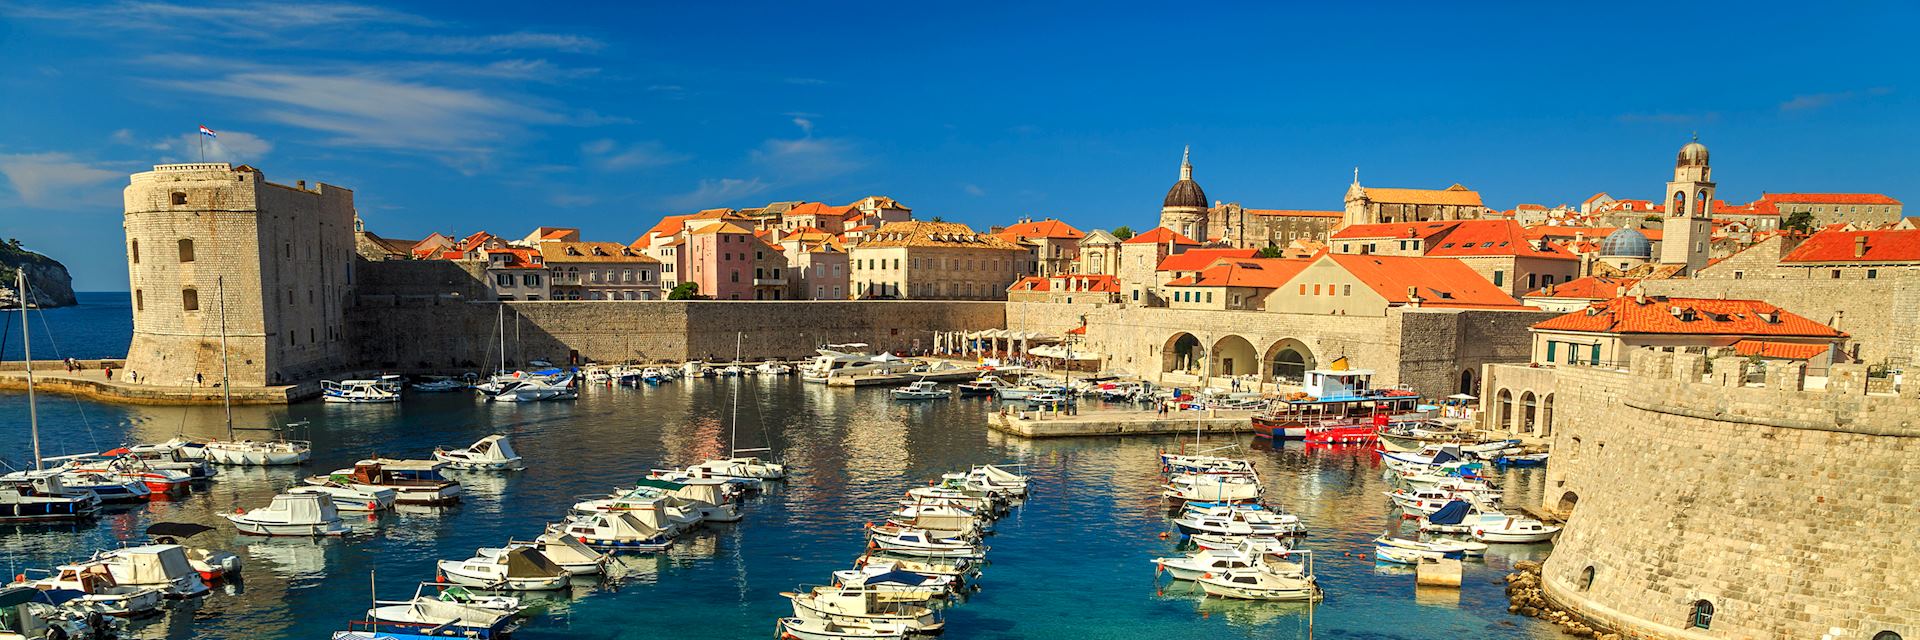 Old Port, Dubrovnik